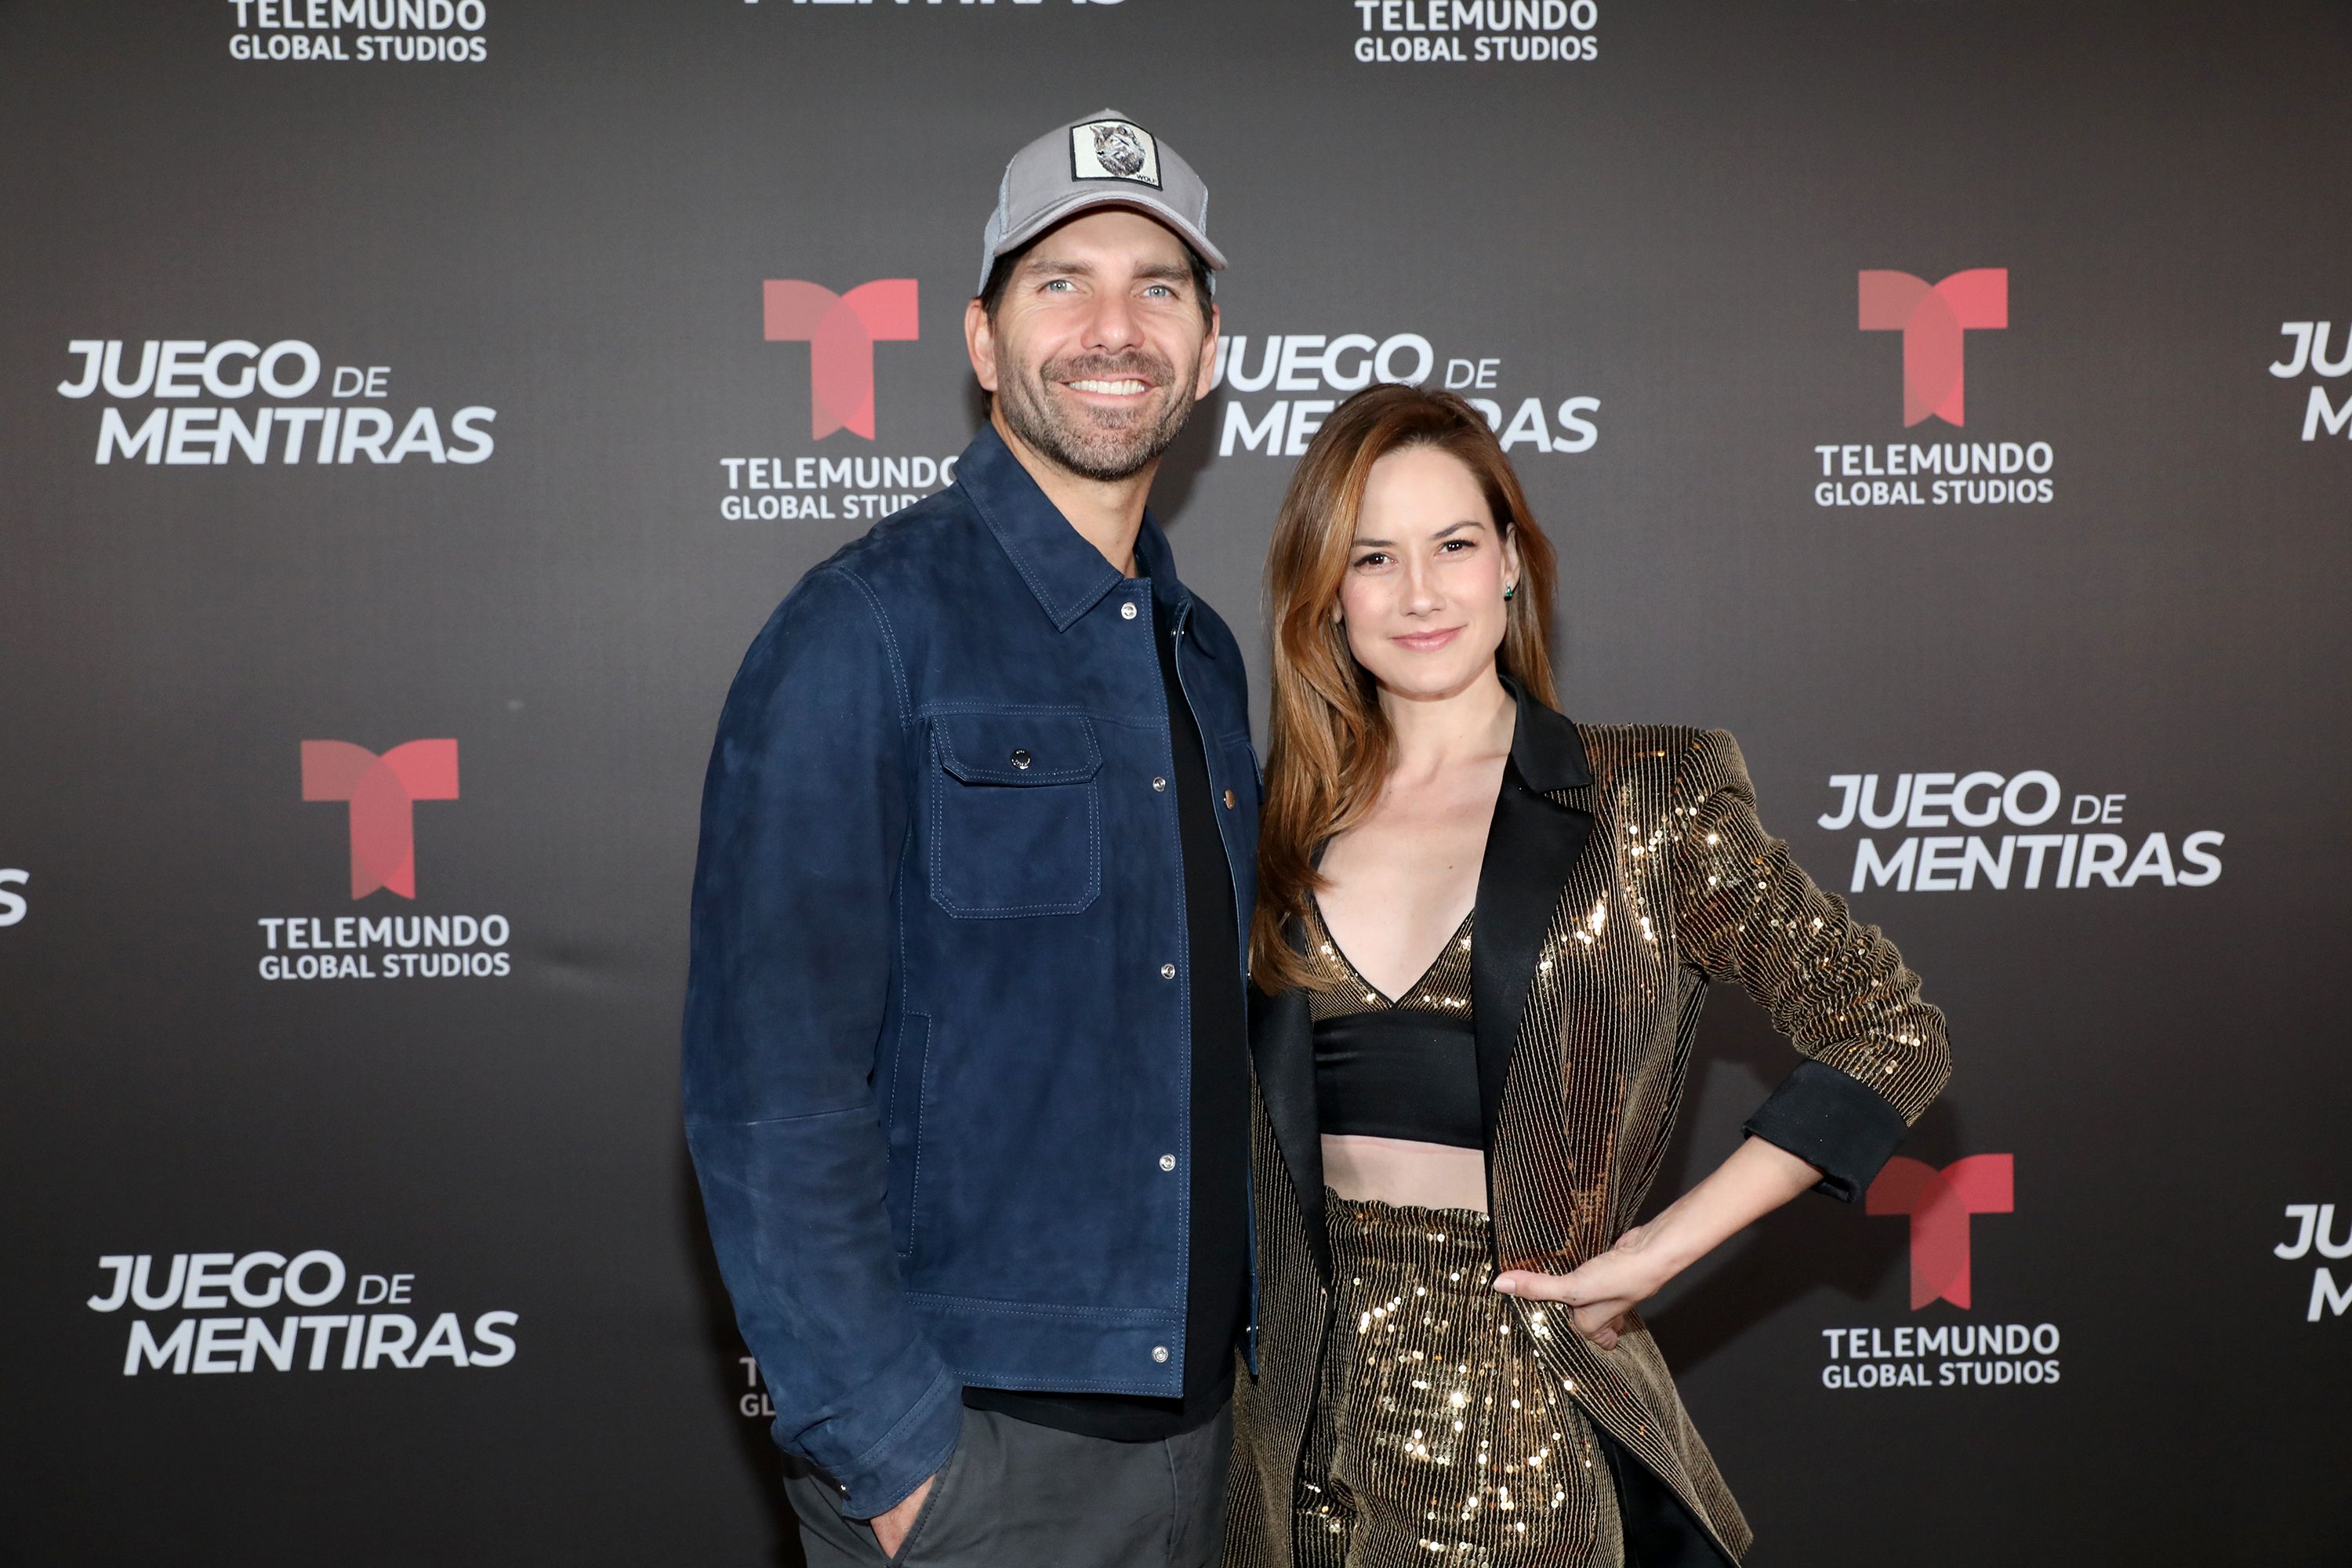 Arap Bethke junto a la actriz Altaír Jarabo, ellos protagonizan "Juego de Mentiras" para Telemundo.